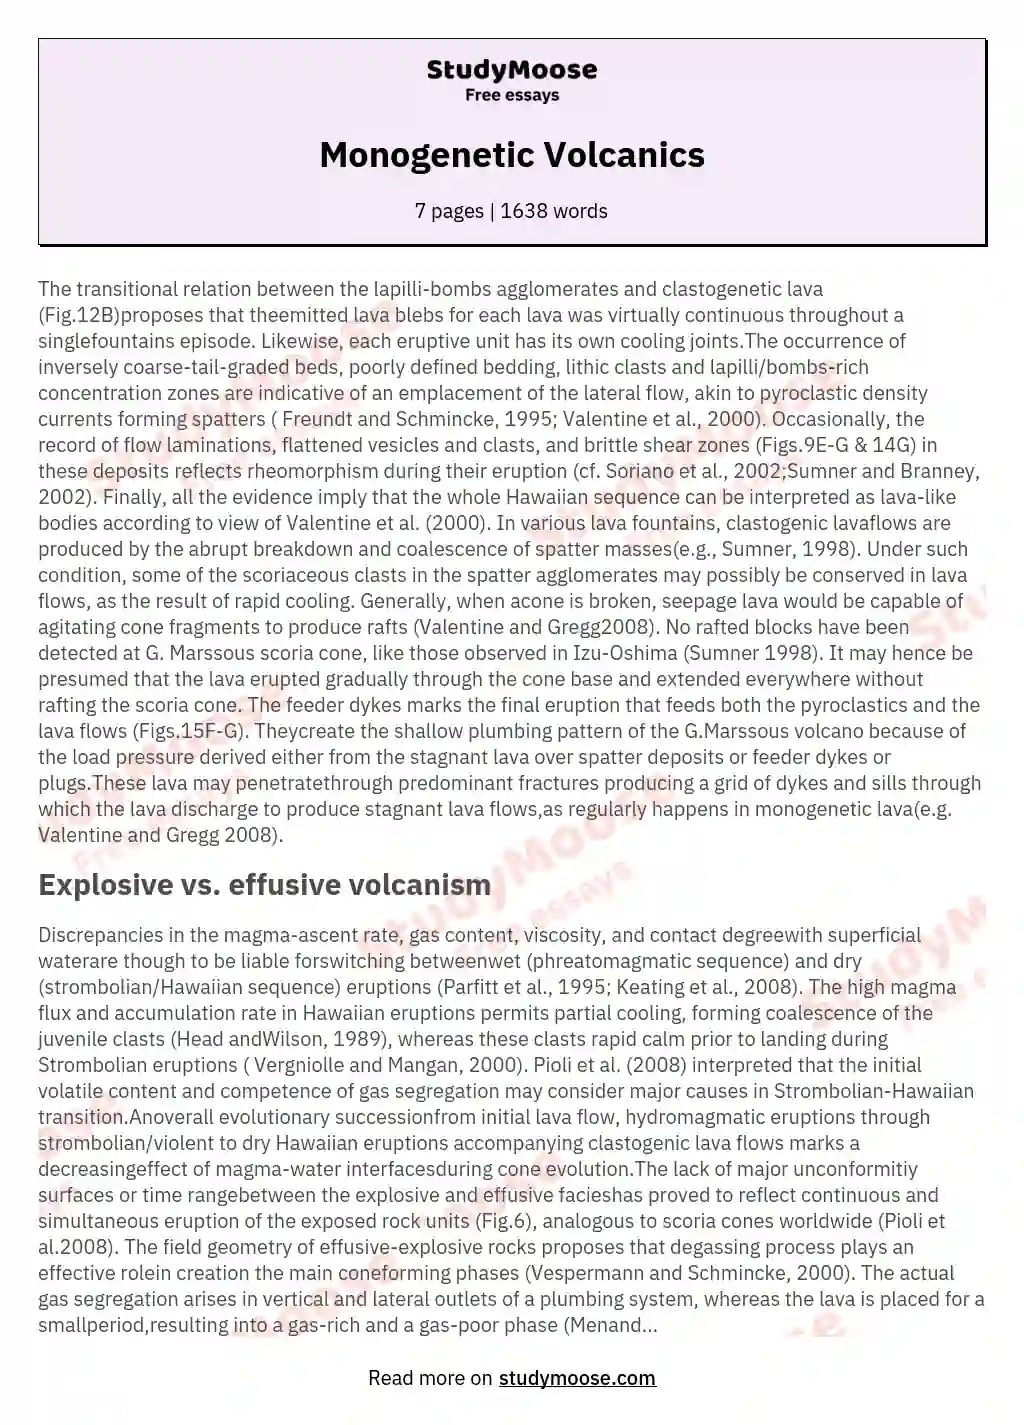 Monogenetic Volcanics essay